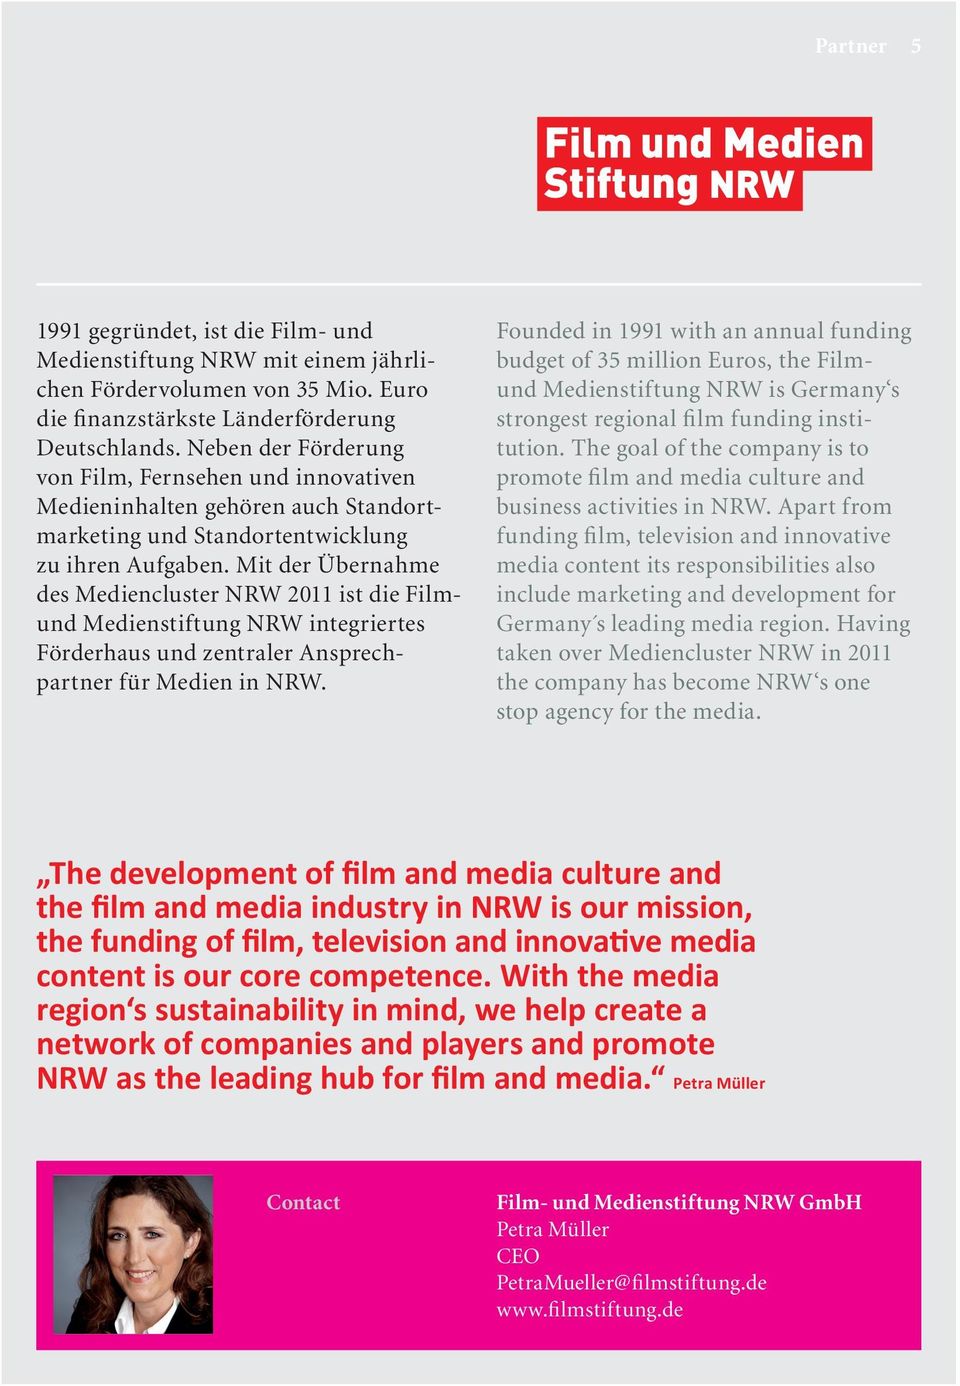 Mit der Übernahme des Mediencluster NRW 2011 ist die Filmund Medienstiftung NRW integriertes Förderhaus und zentraler Ansprechpartner für Medien in NRW.